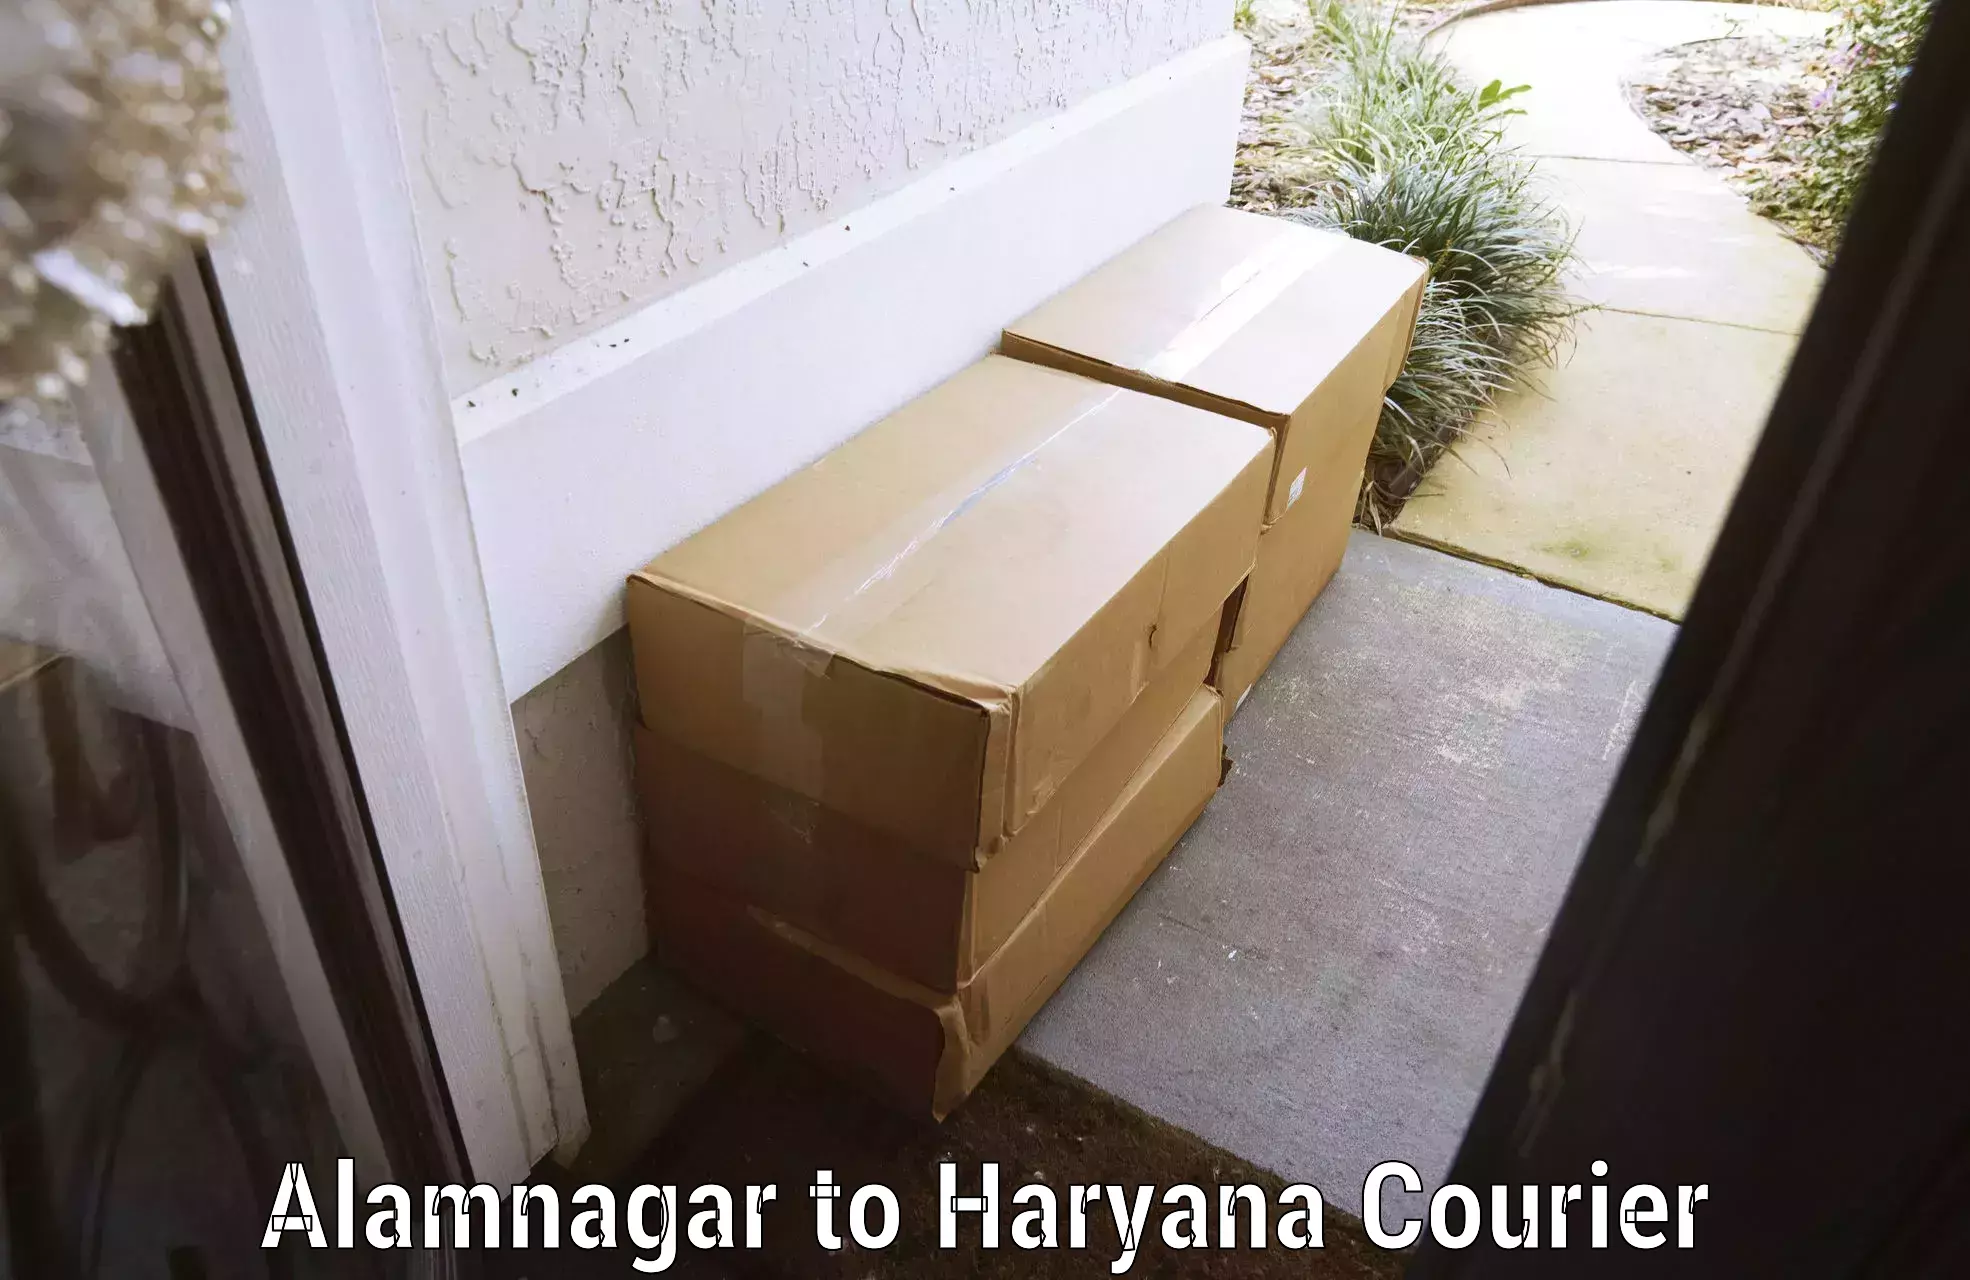 Baggage transport scheduler Alamnagar to Haryana